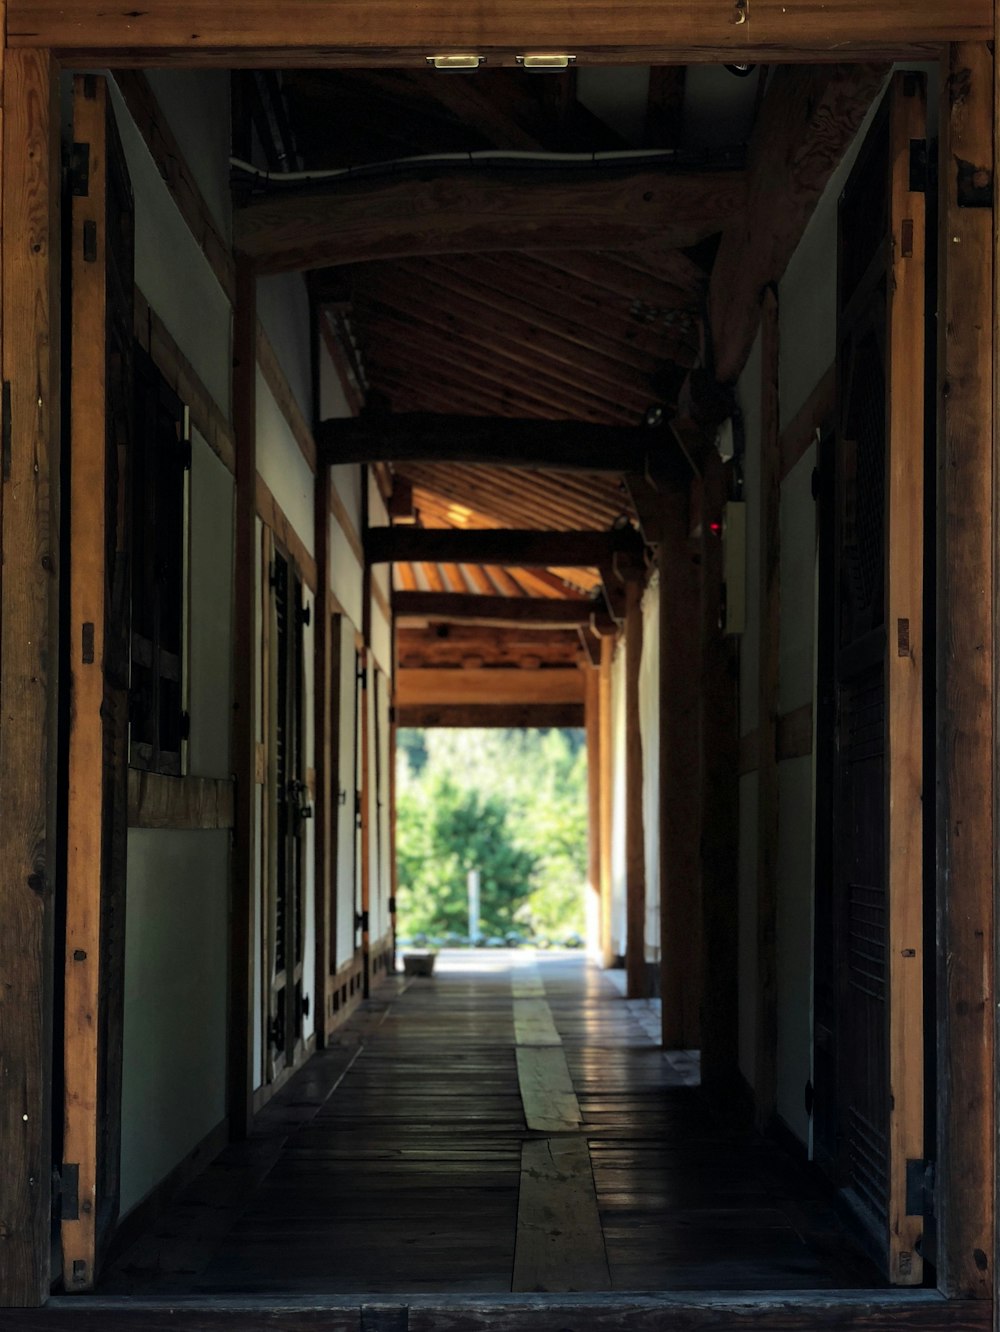 brown wooden hallway during daytime